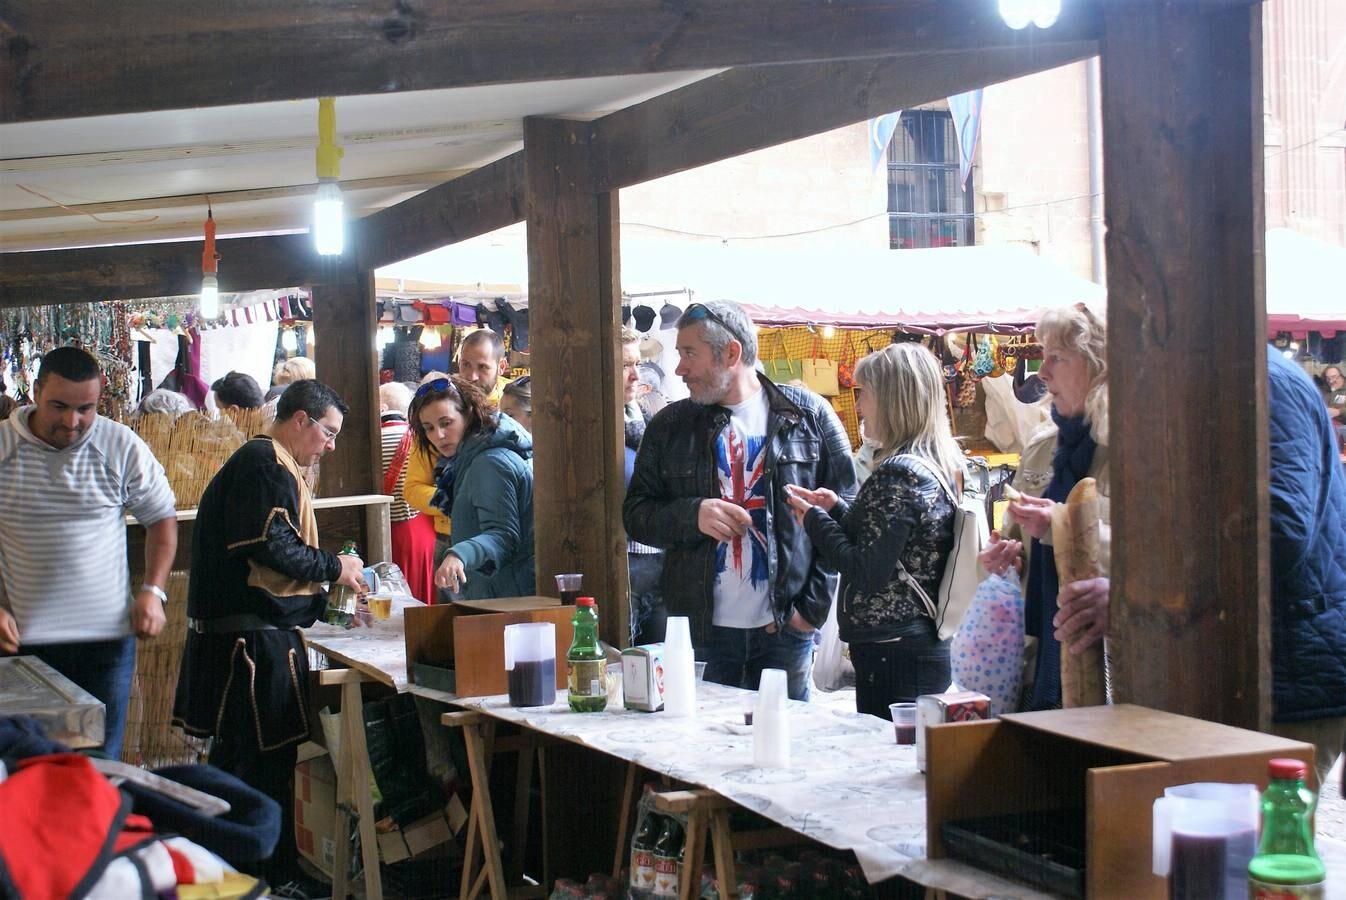 Fotos: Mercado Medieval de Nájera